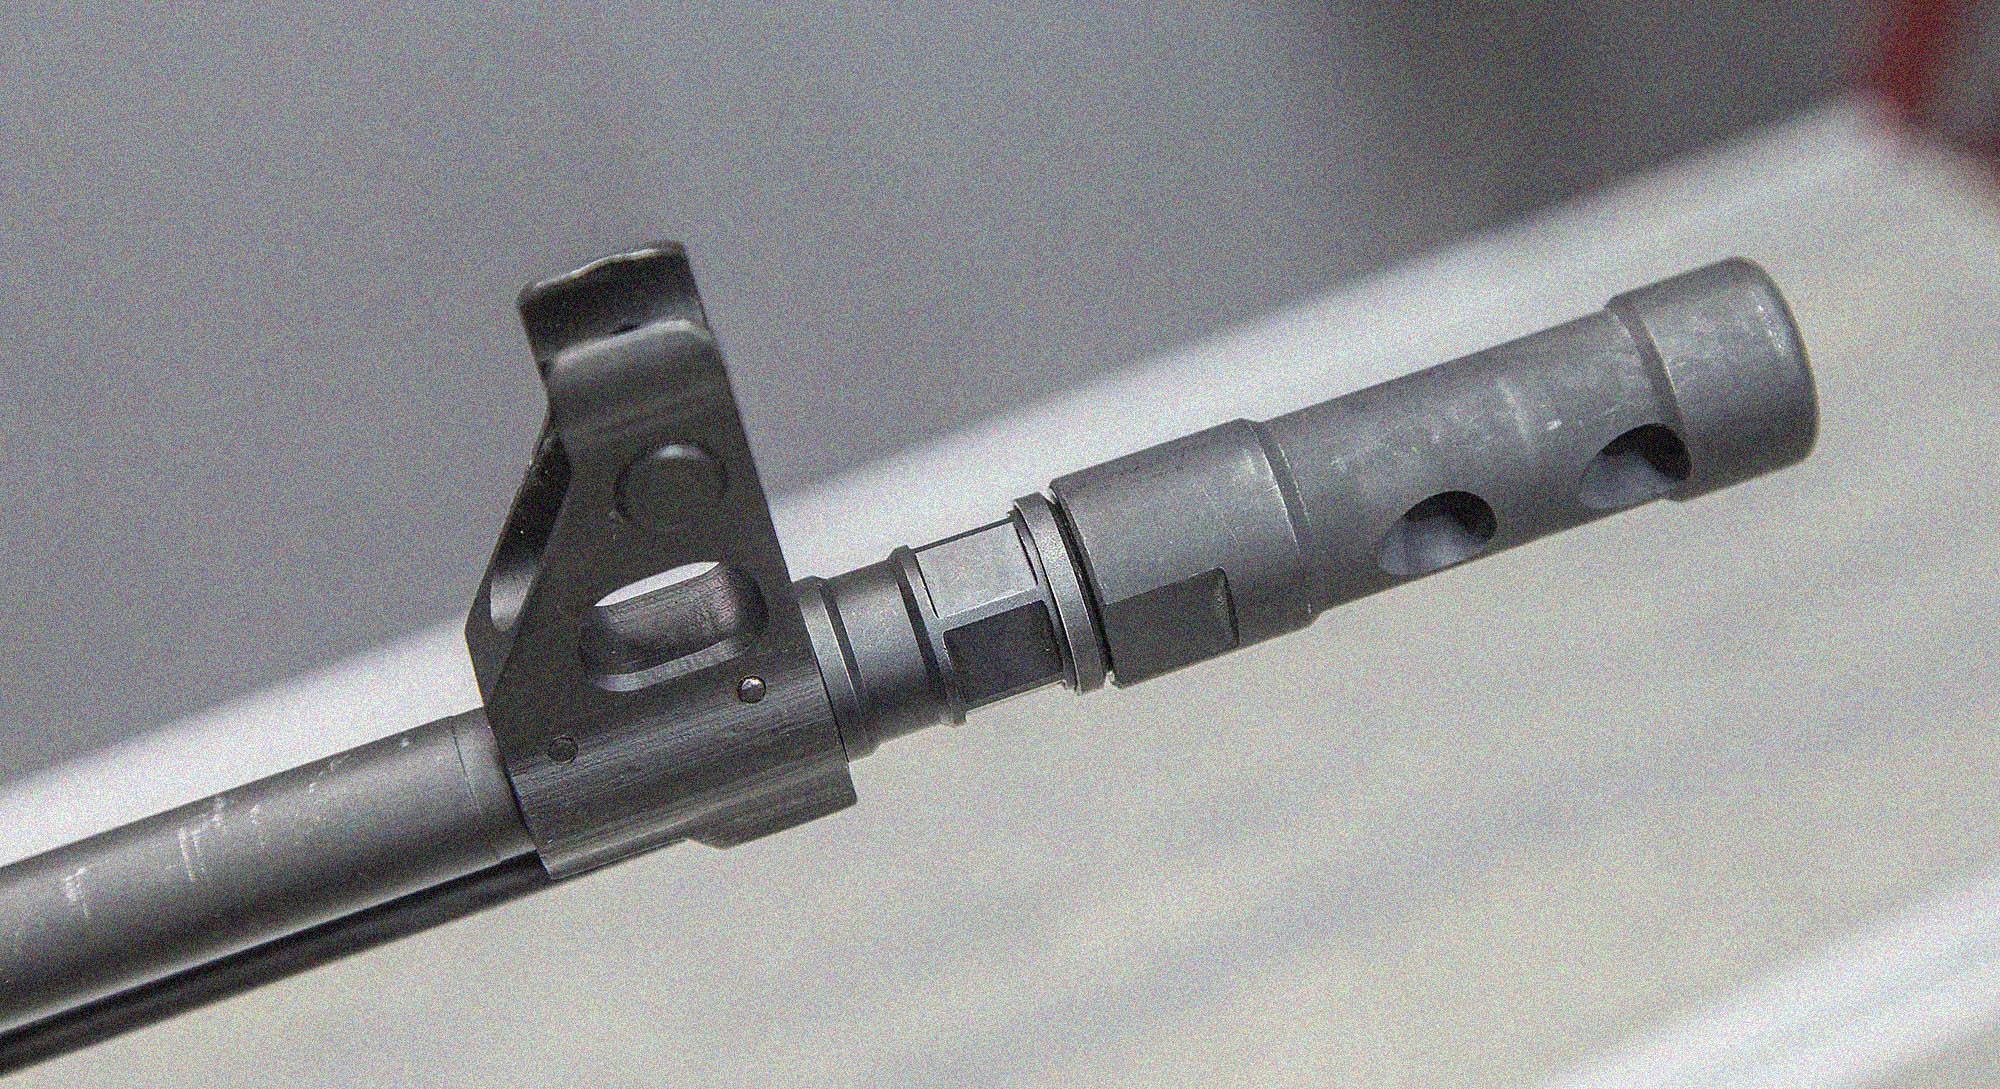 How to remove AK 47 muzzle brake?